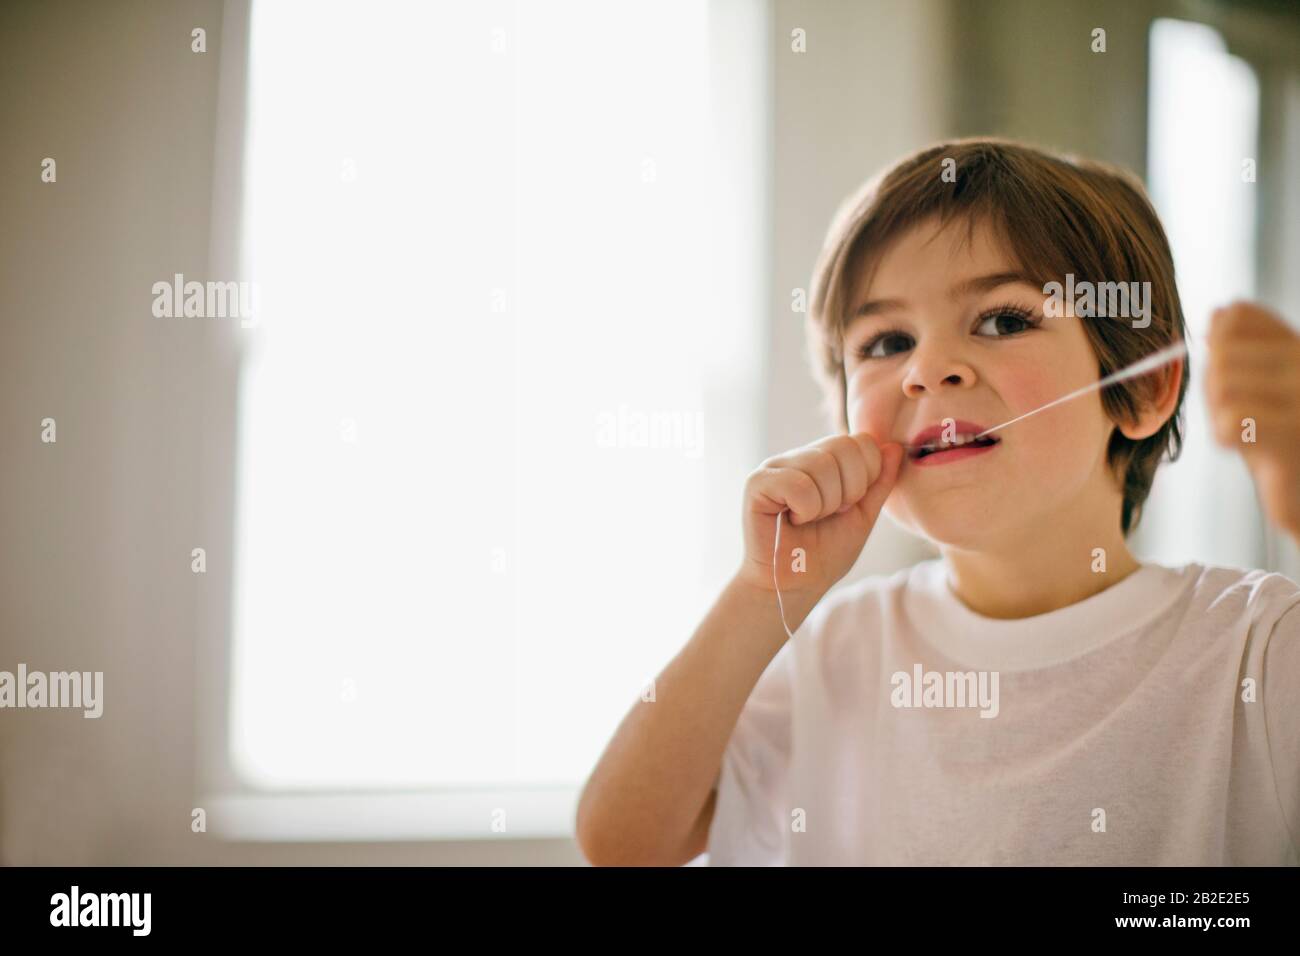 Der junge Junge flossing seine Zähne. Stockfoto